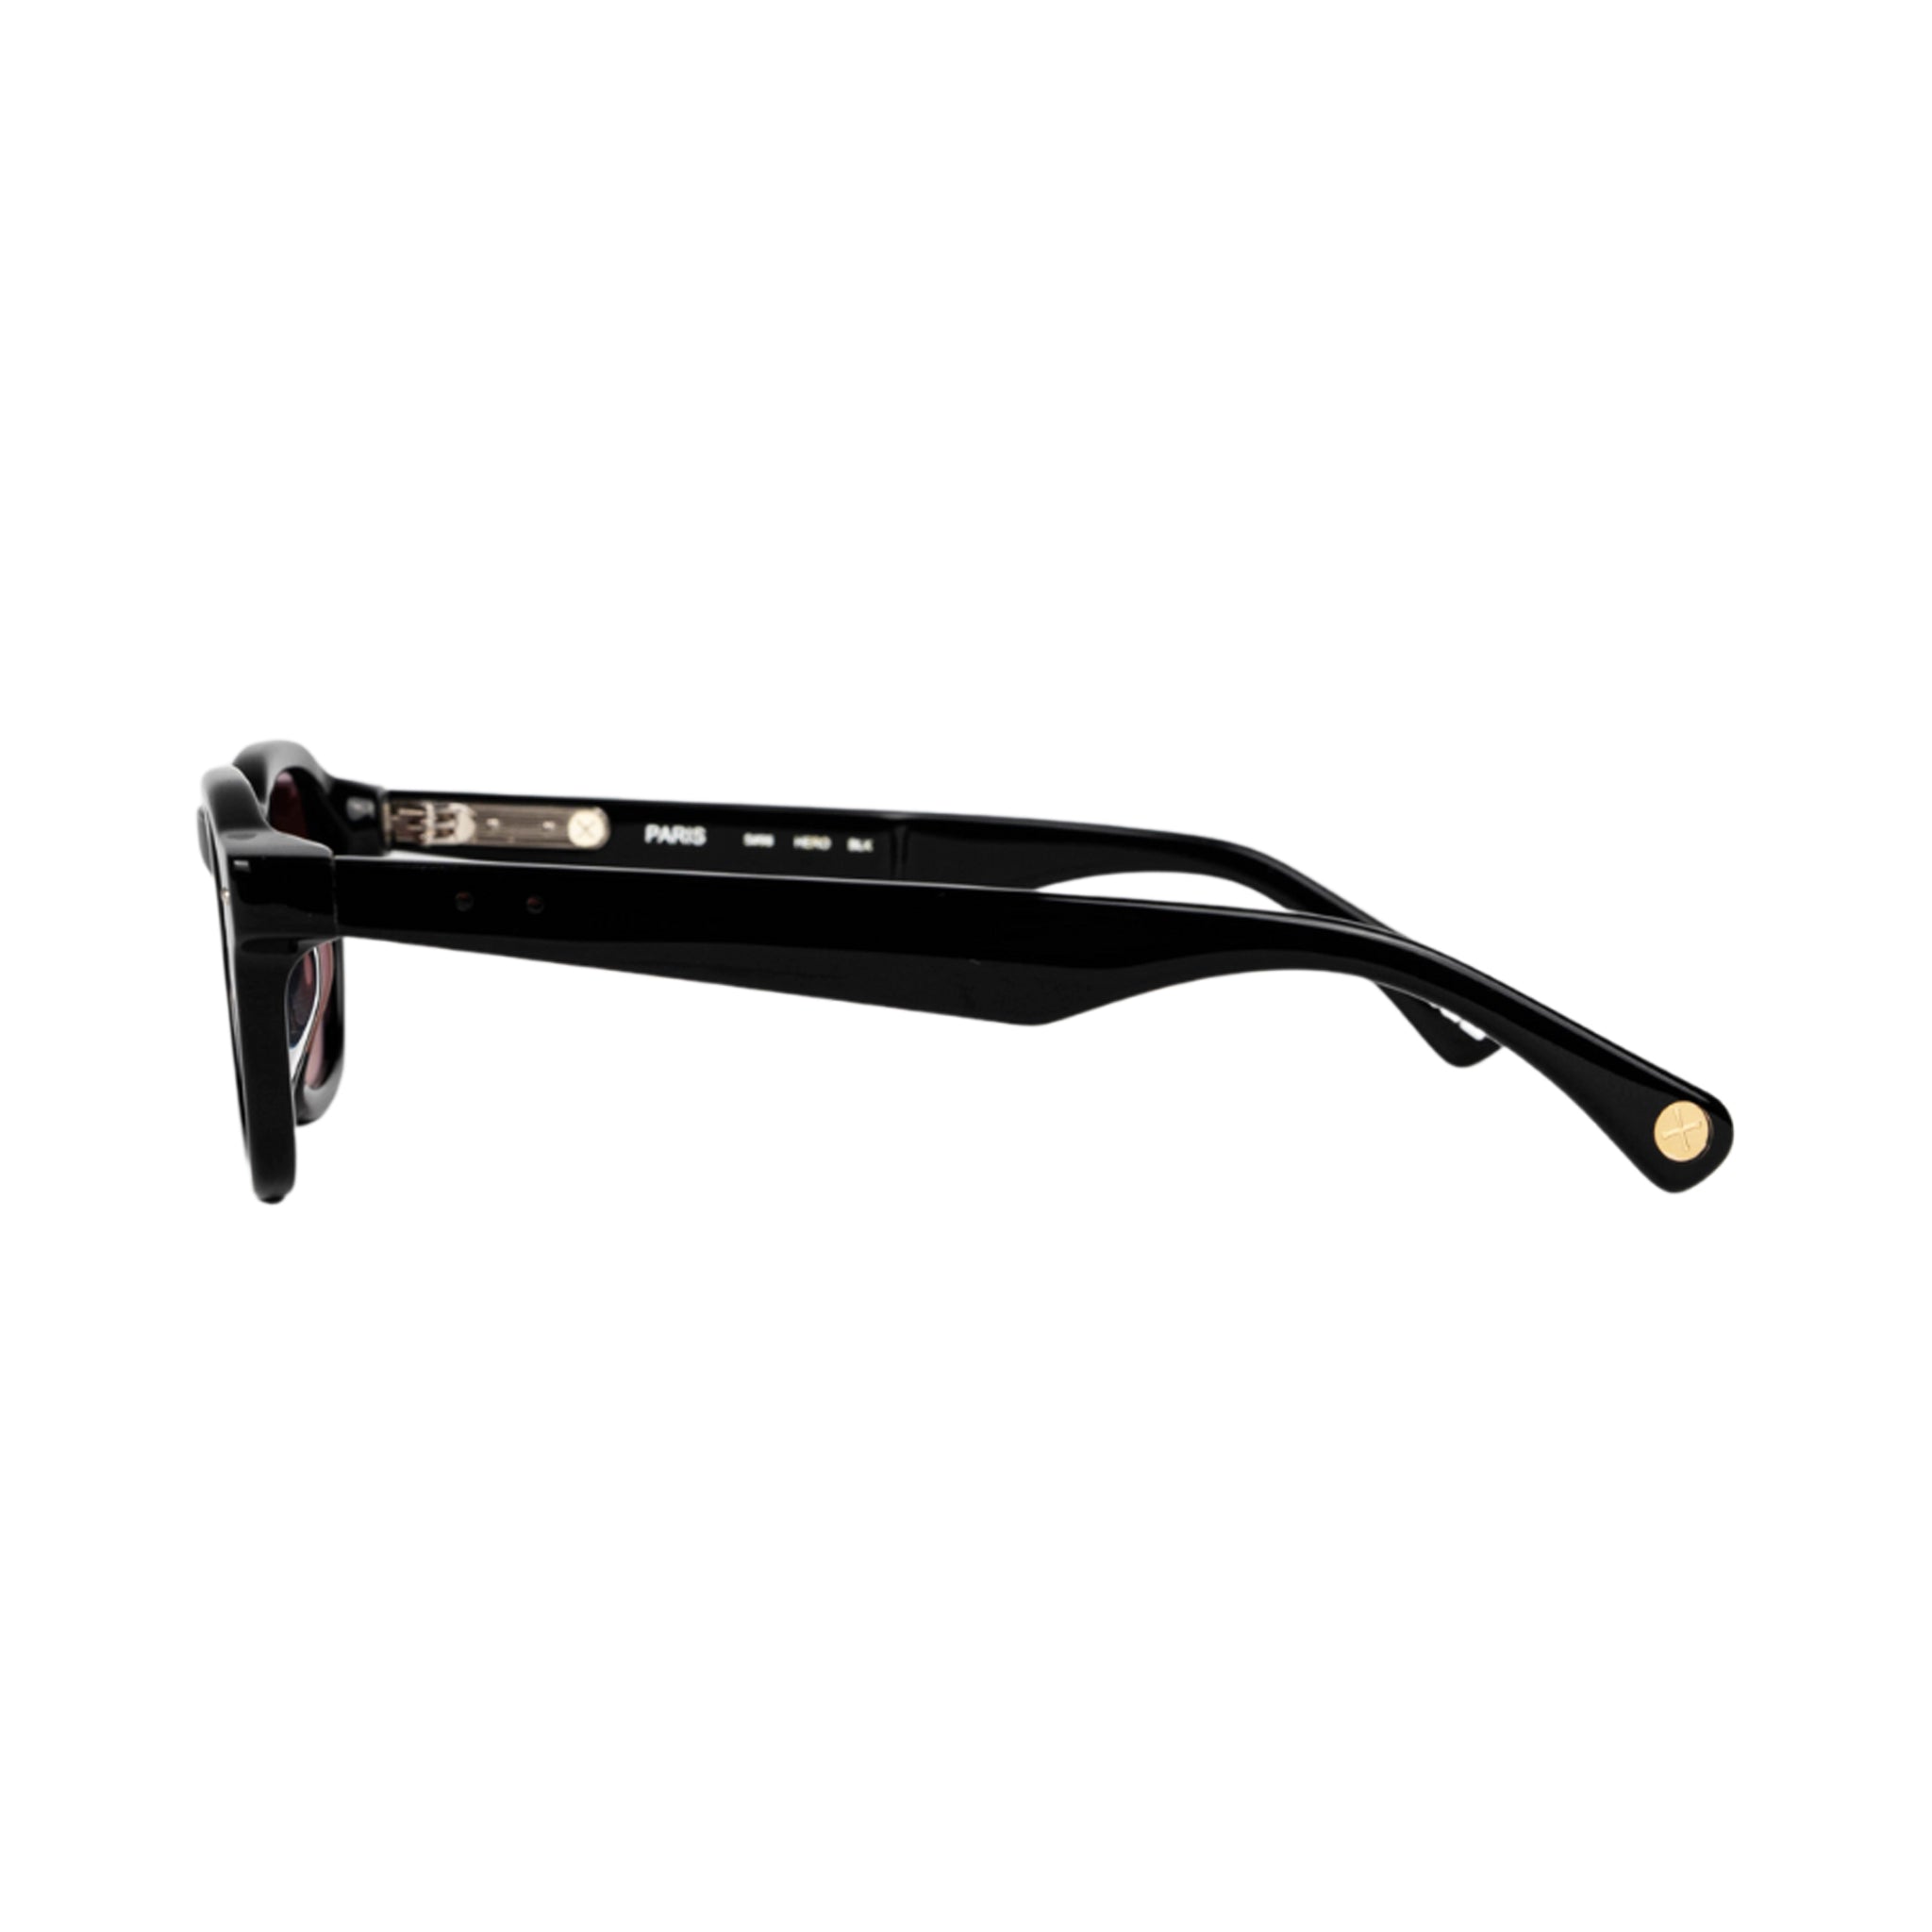 S98 Hero occhiali da sole